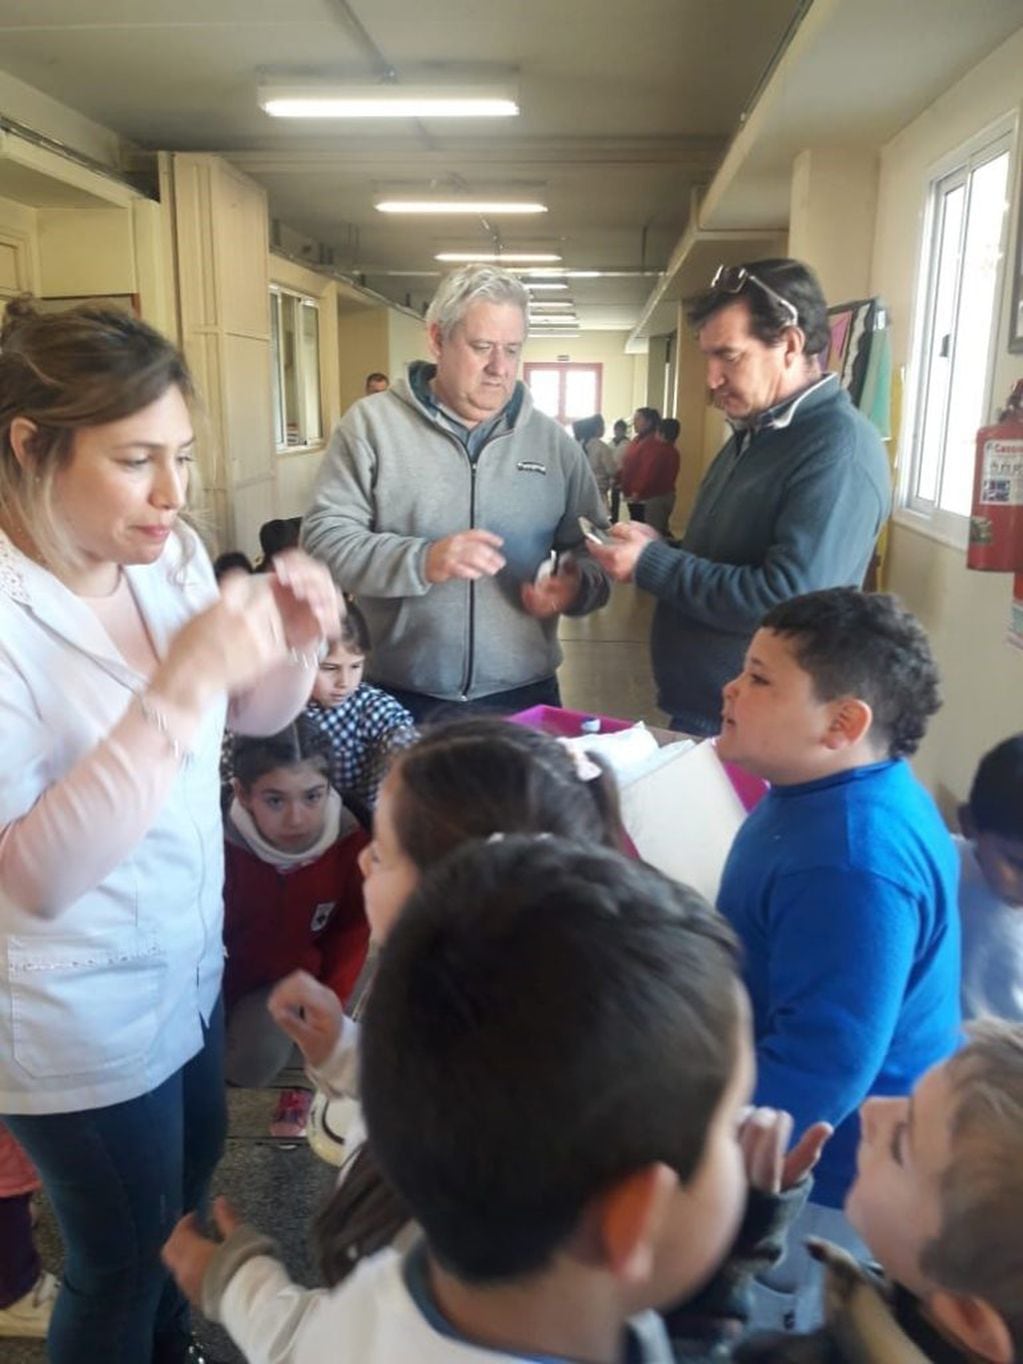 Alta Gracia: La Escuela Santiago de Liniers recibió el Taller de Primeros Auxilios.